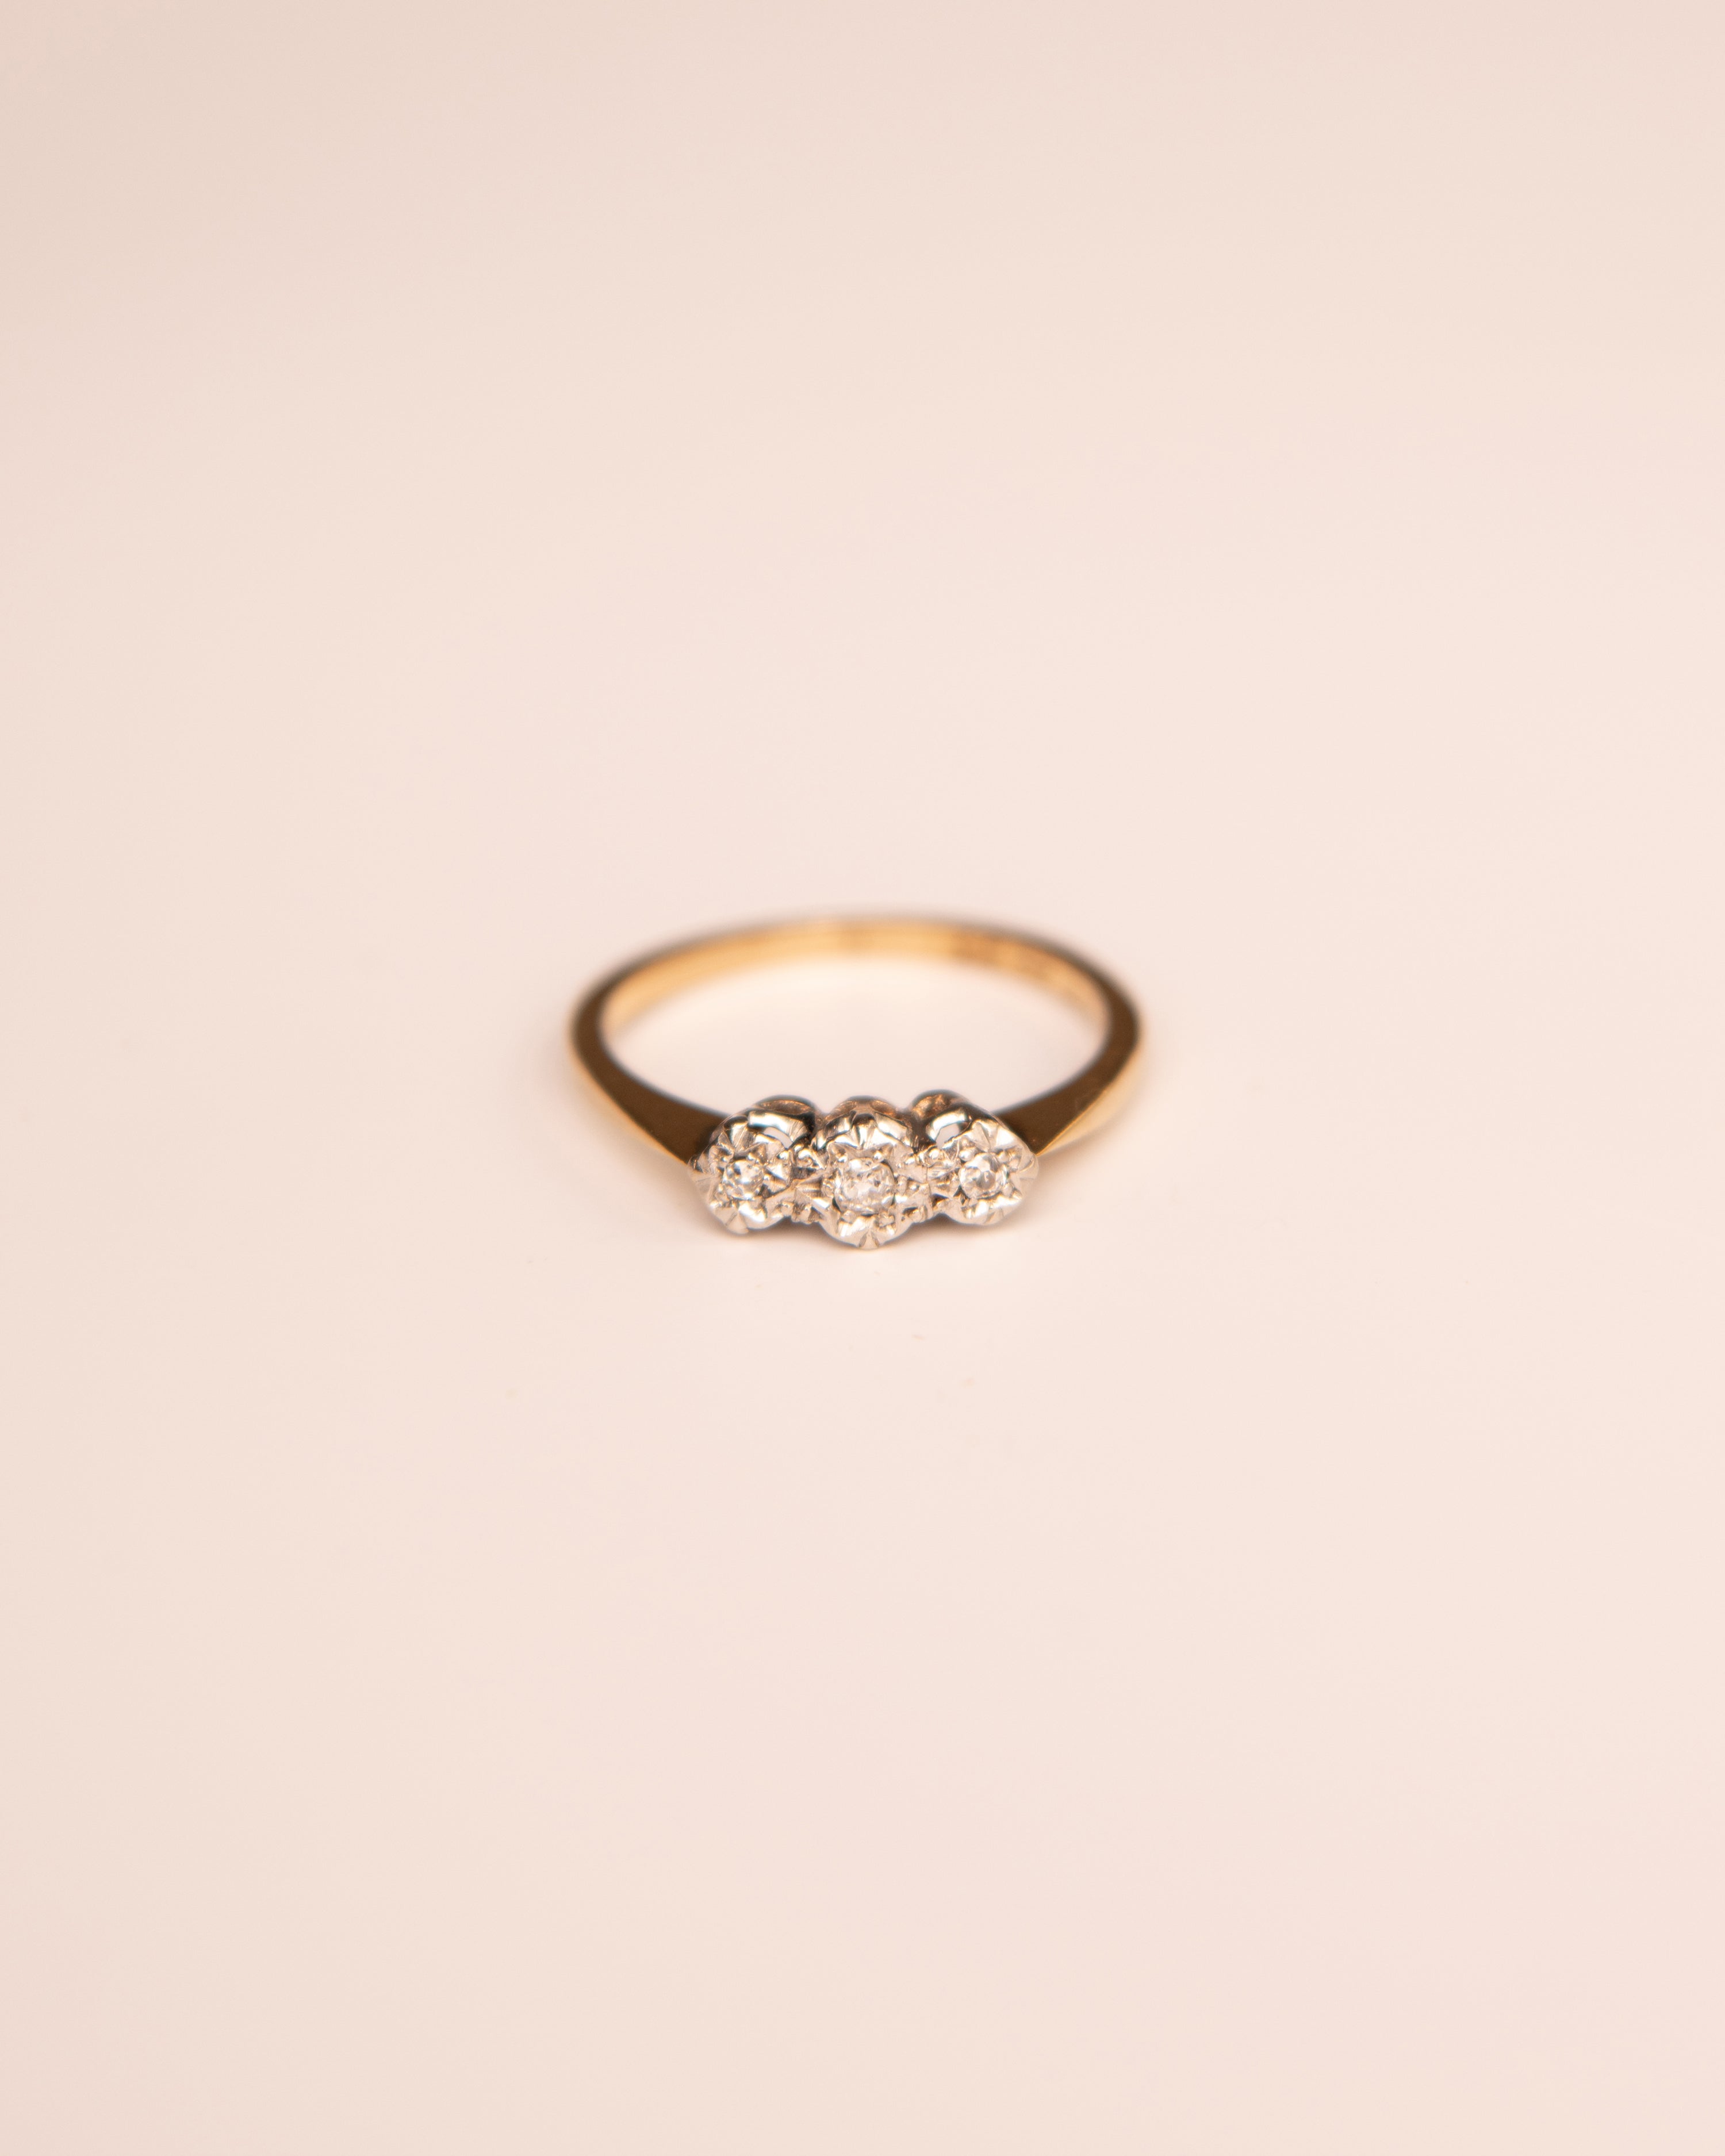 Laurel 9ct Gold Diamond Trilogy Ring